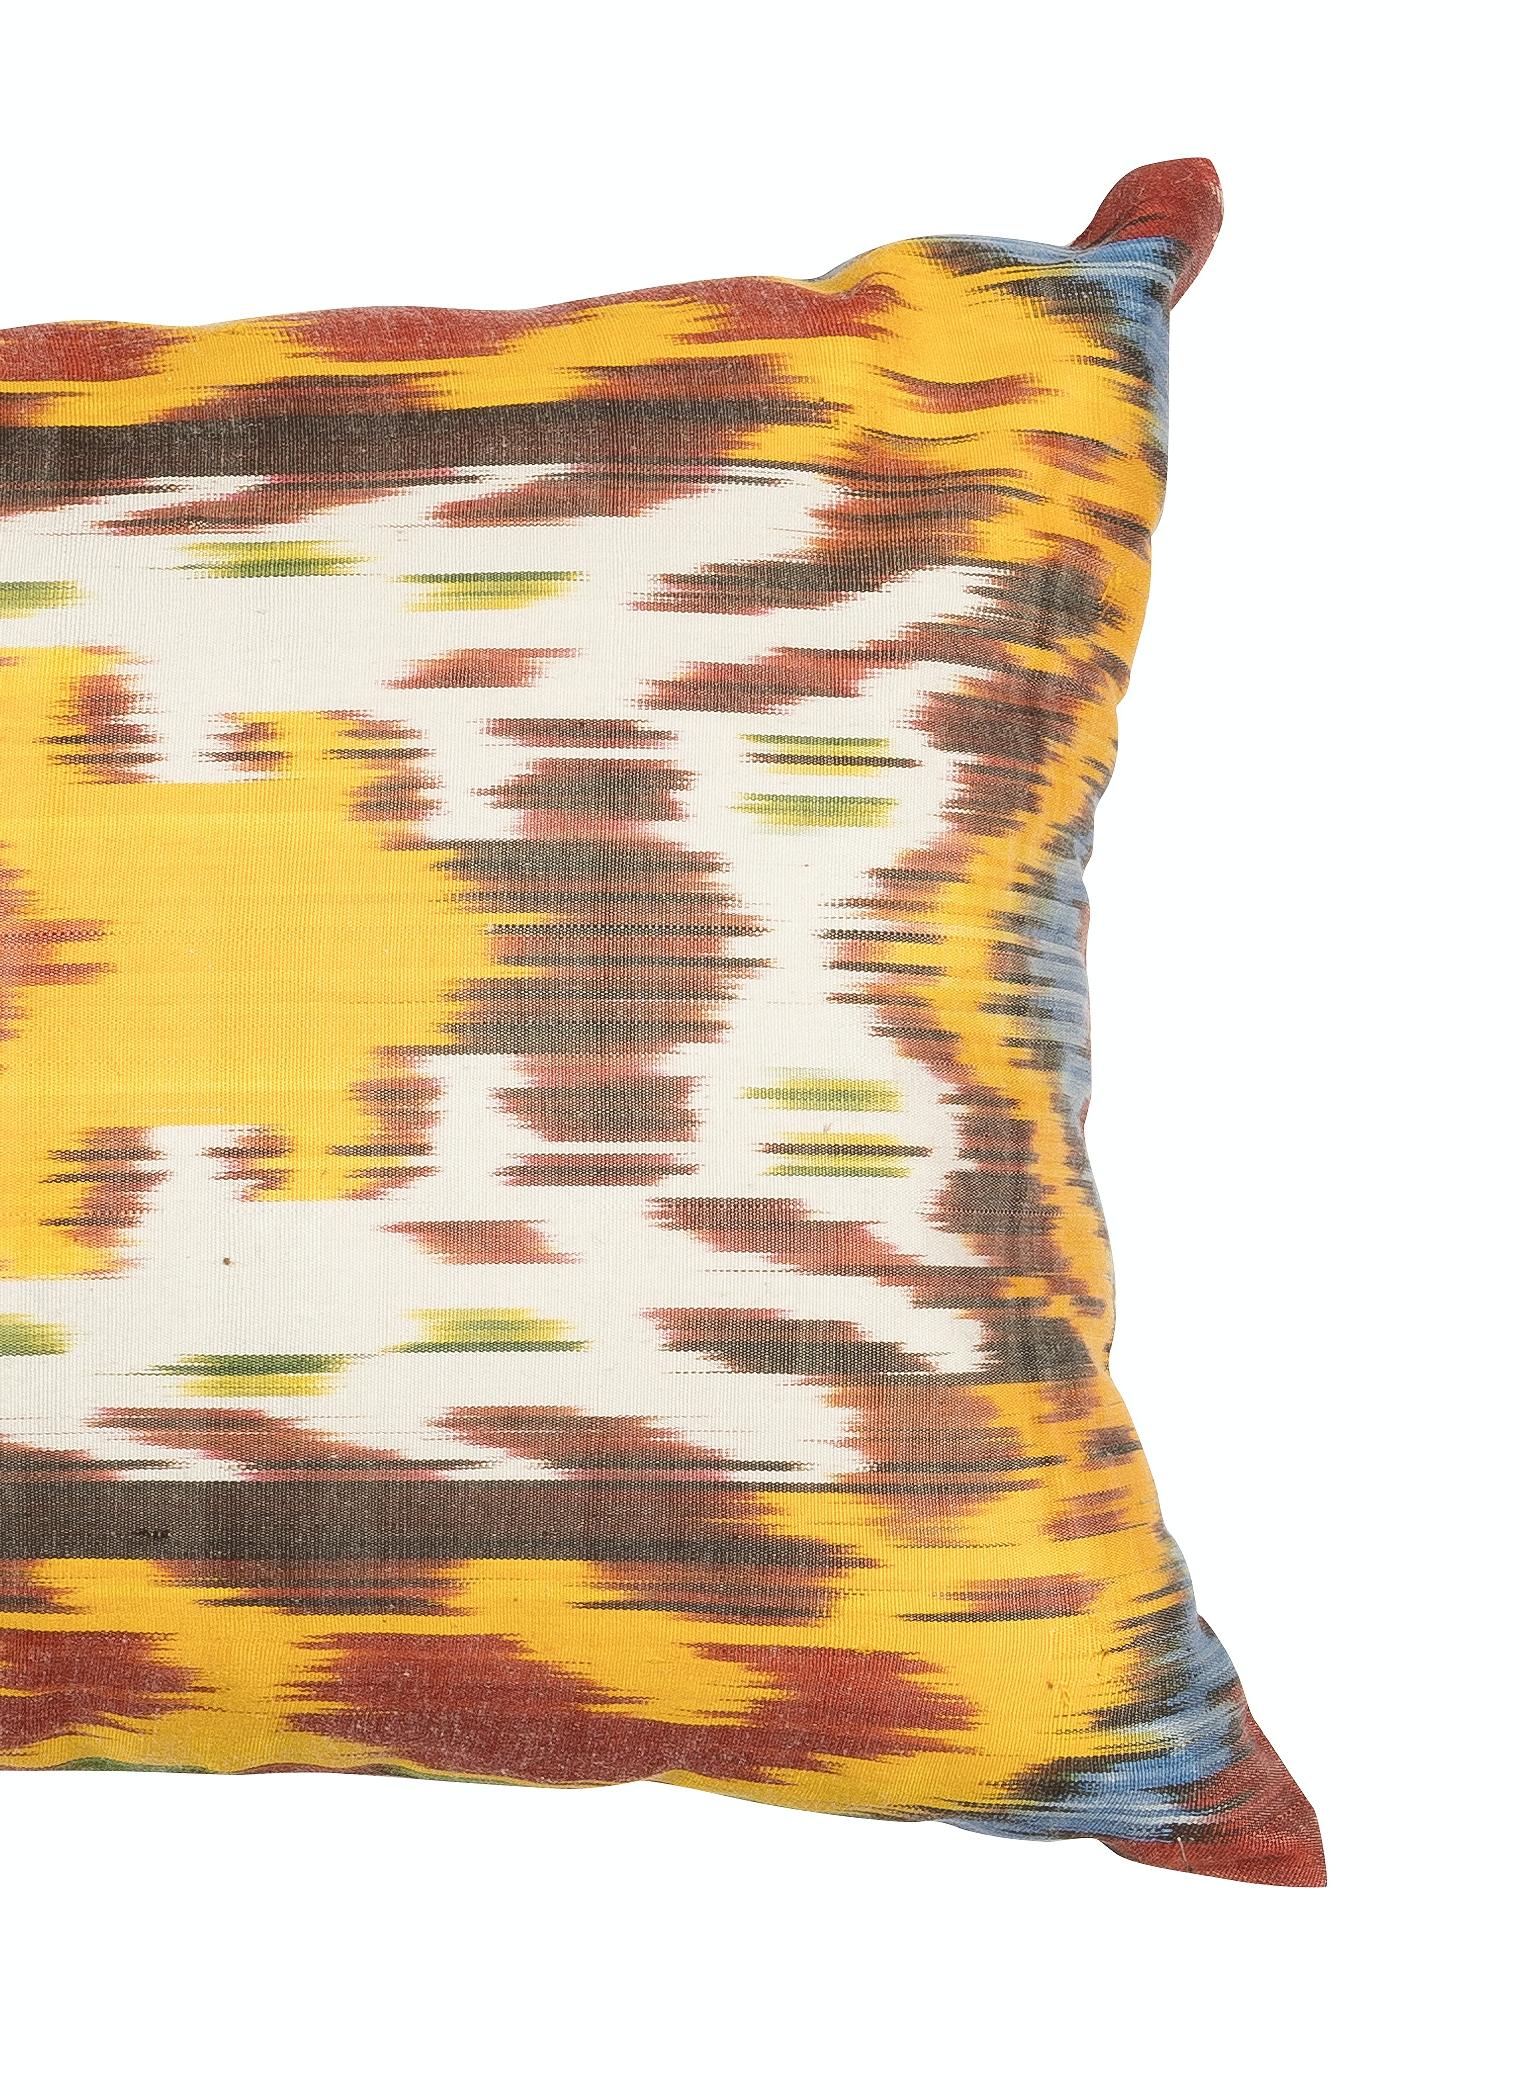 Uzbek Decorative Home Decor Lace Pillow, Vintage Ikat Handcraft Cotton Cushion Cover For Sale